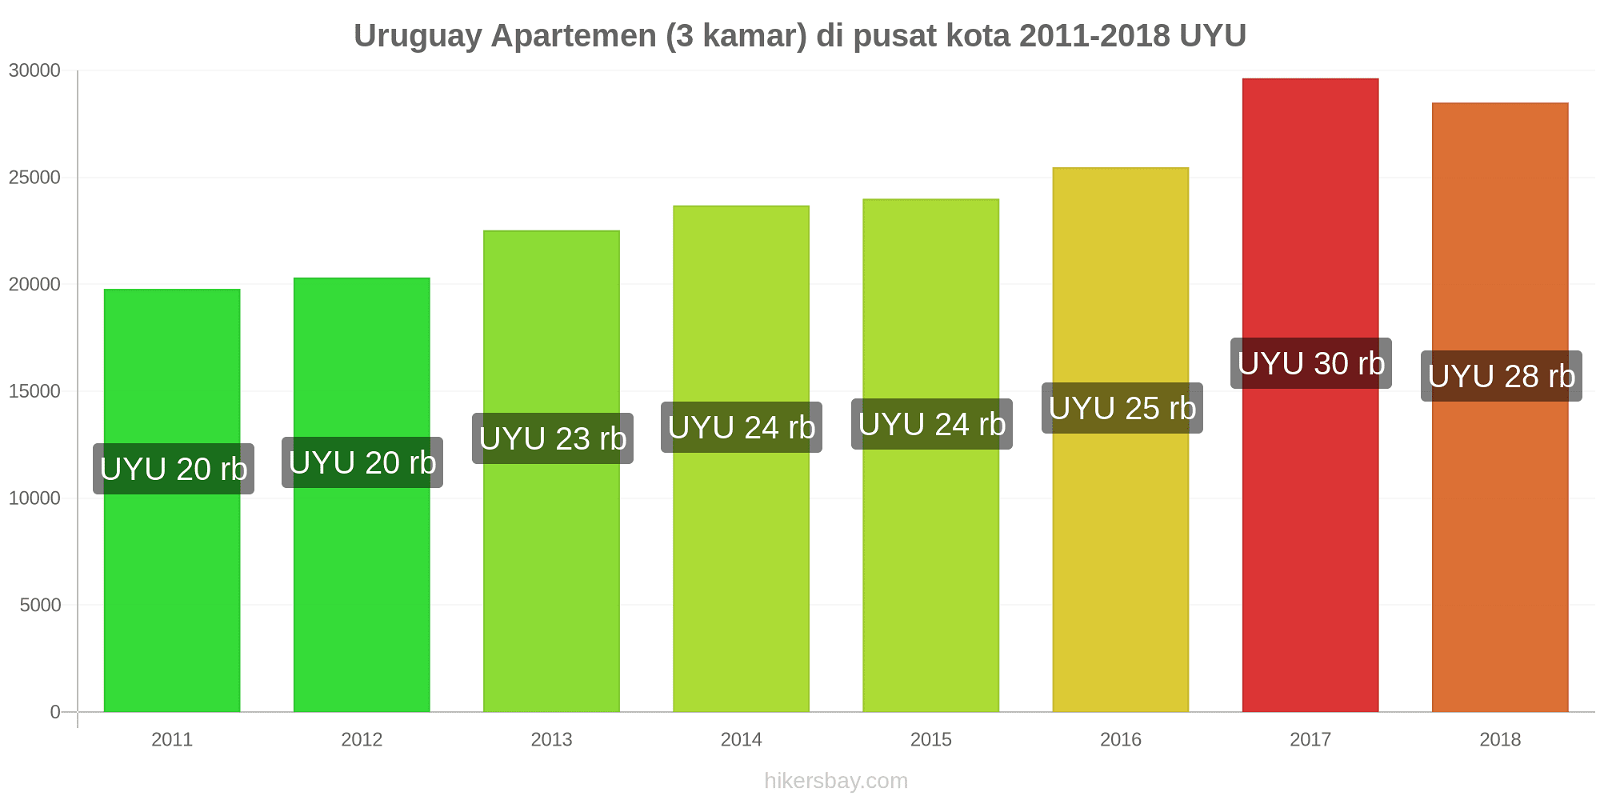 Uruguay perubahan harga Apartemen (3 kamar) di pusat kota hikersbay.com